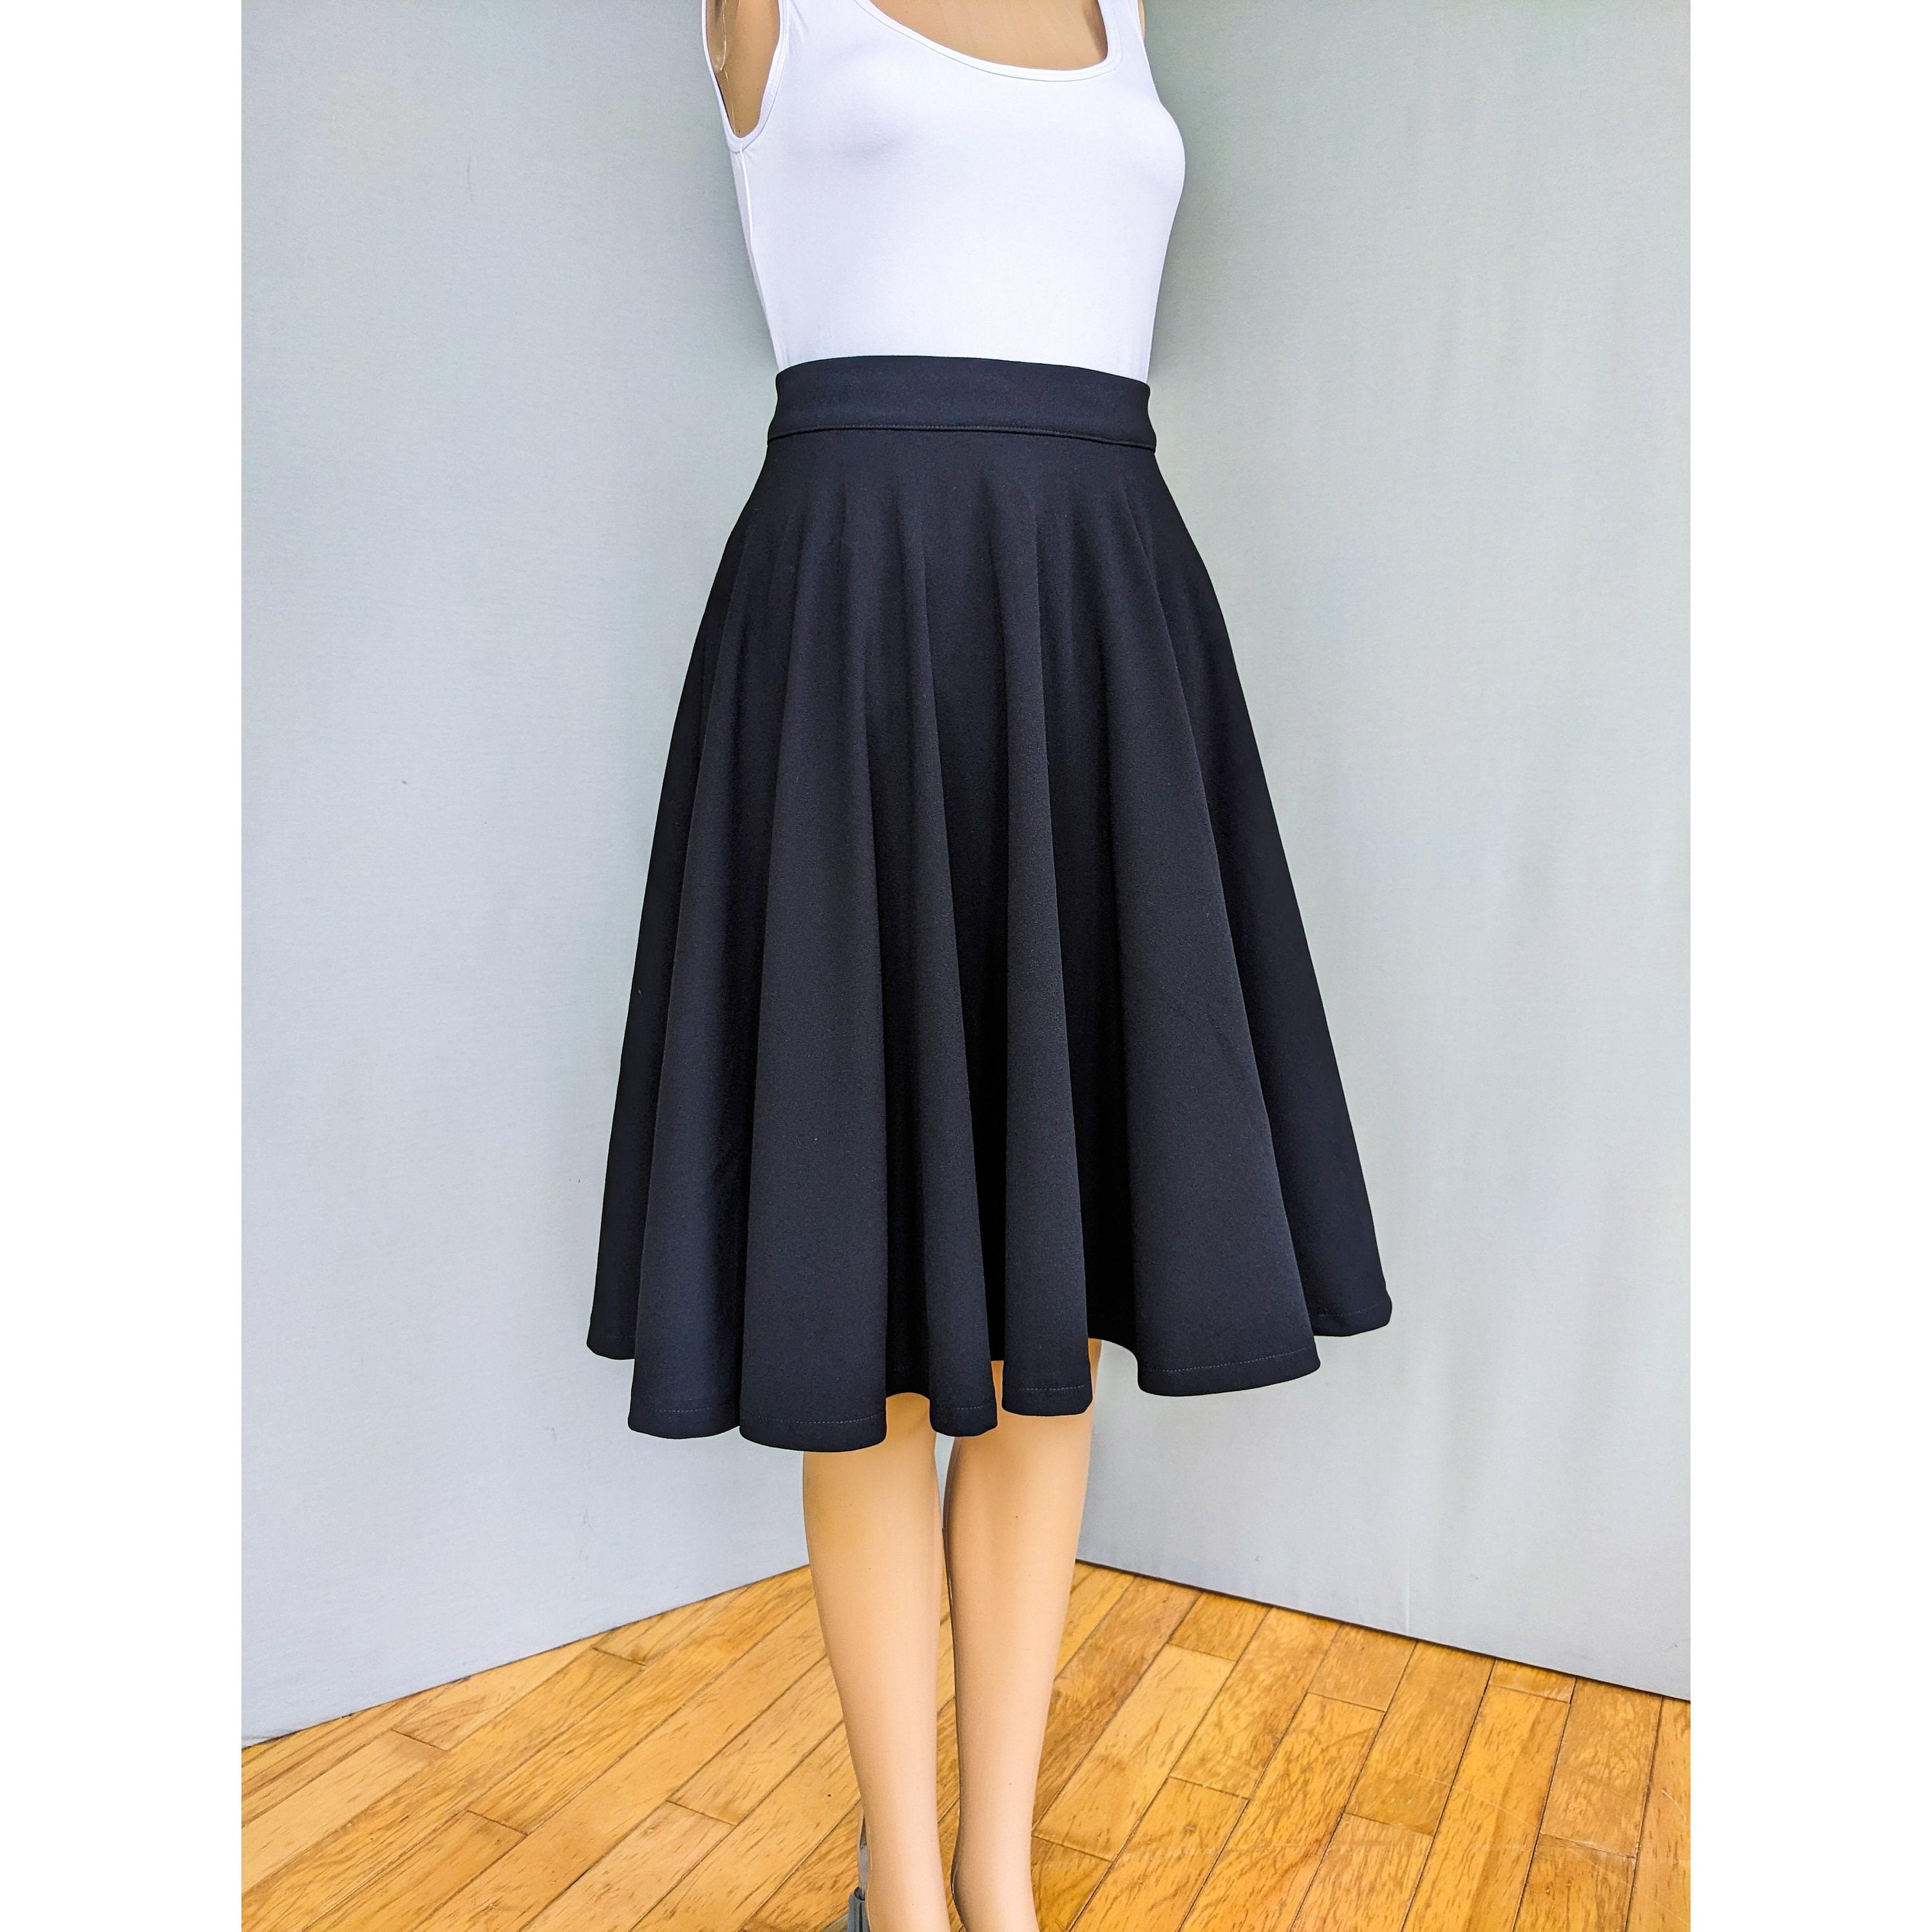 Black Skater Skirt, Made to Order, 50s Vintage Inspired, Pin-up Rockabilly  Style,full Circle Skirt, Minimalist Black Skirt, Knee Length 